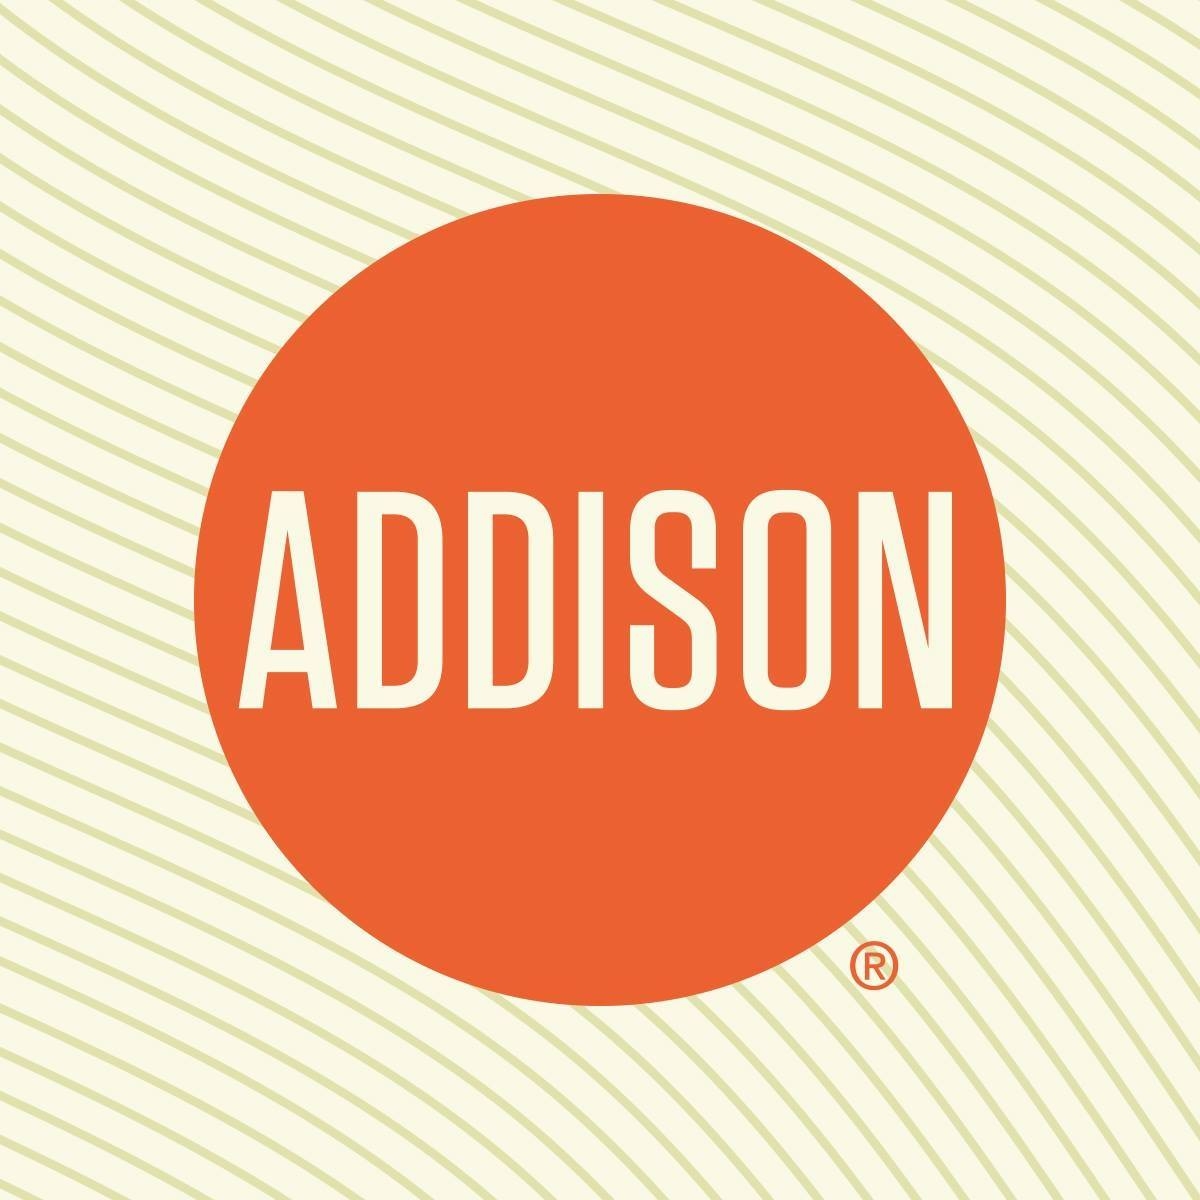 Visit Addison